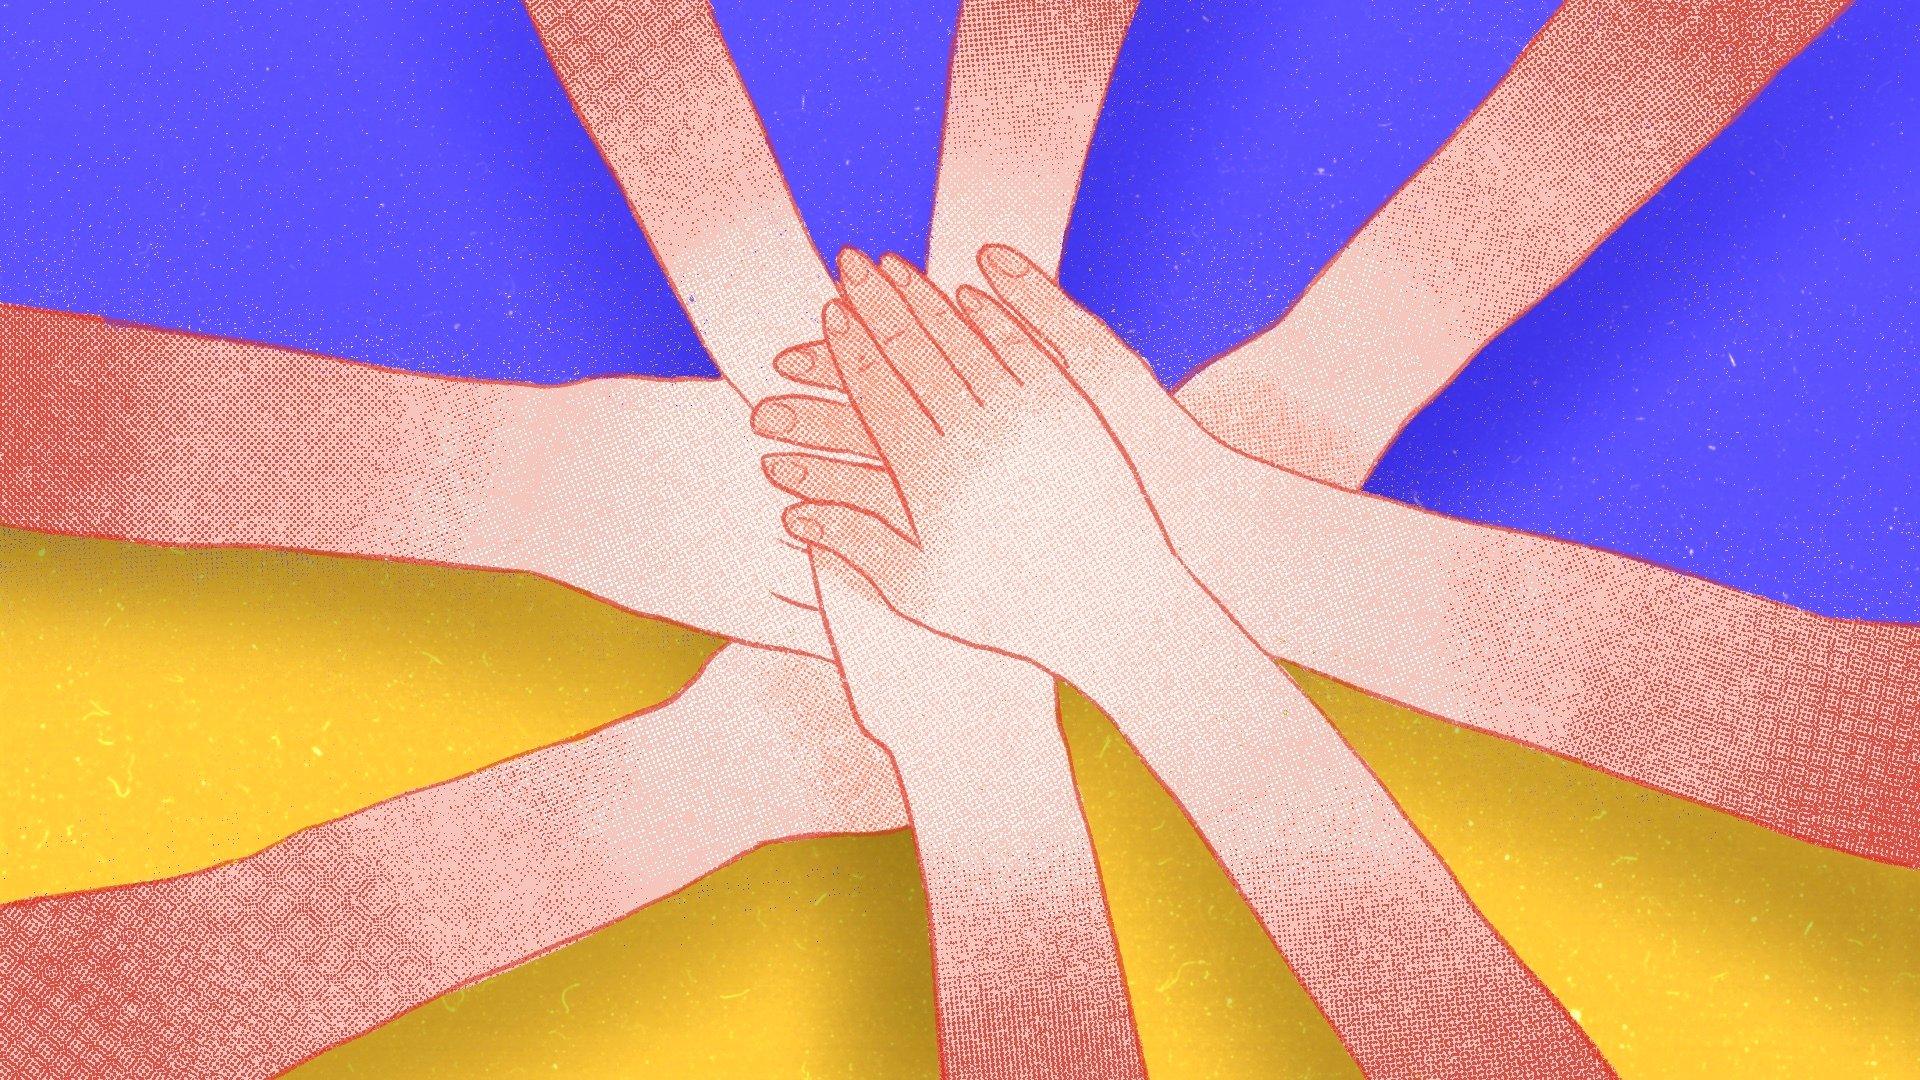 Grafika: na niebiesko-żółtym tle osiem rąk w uścisku